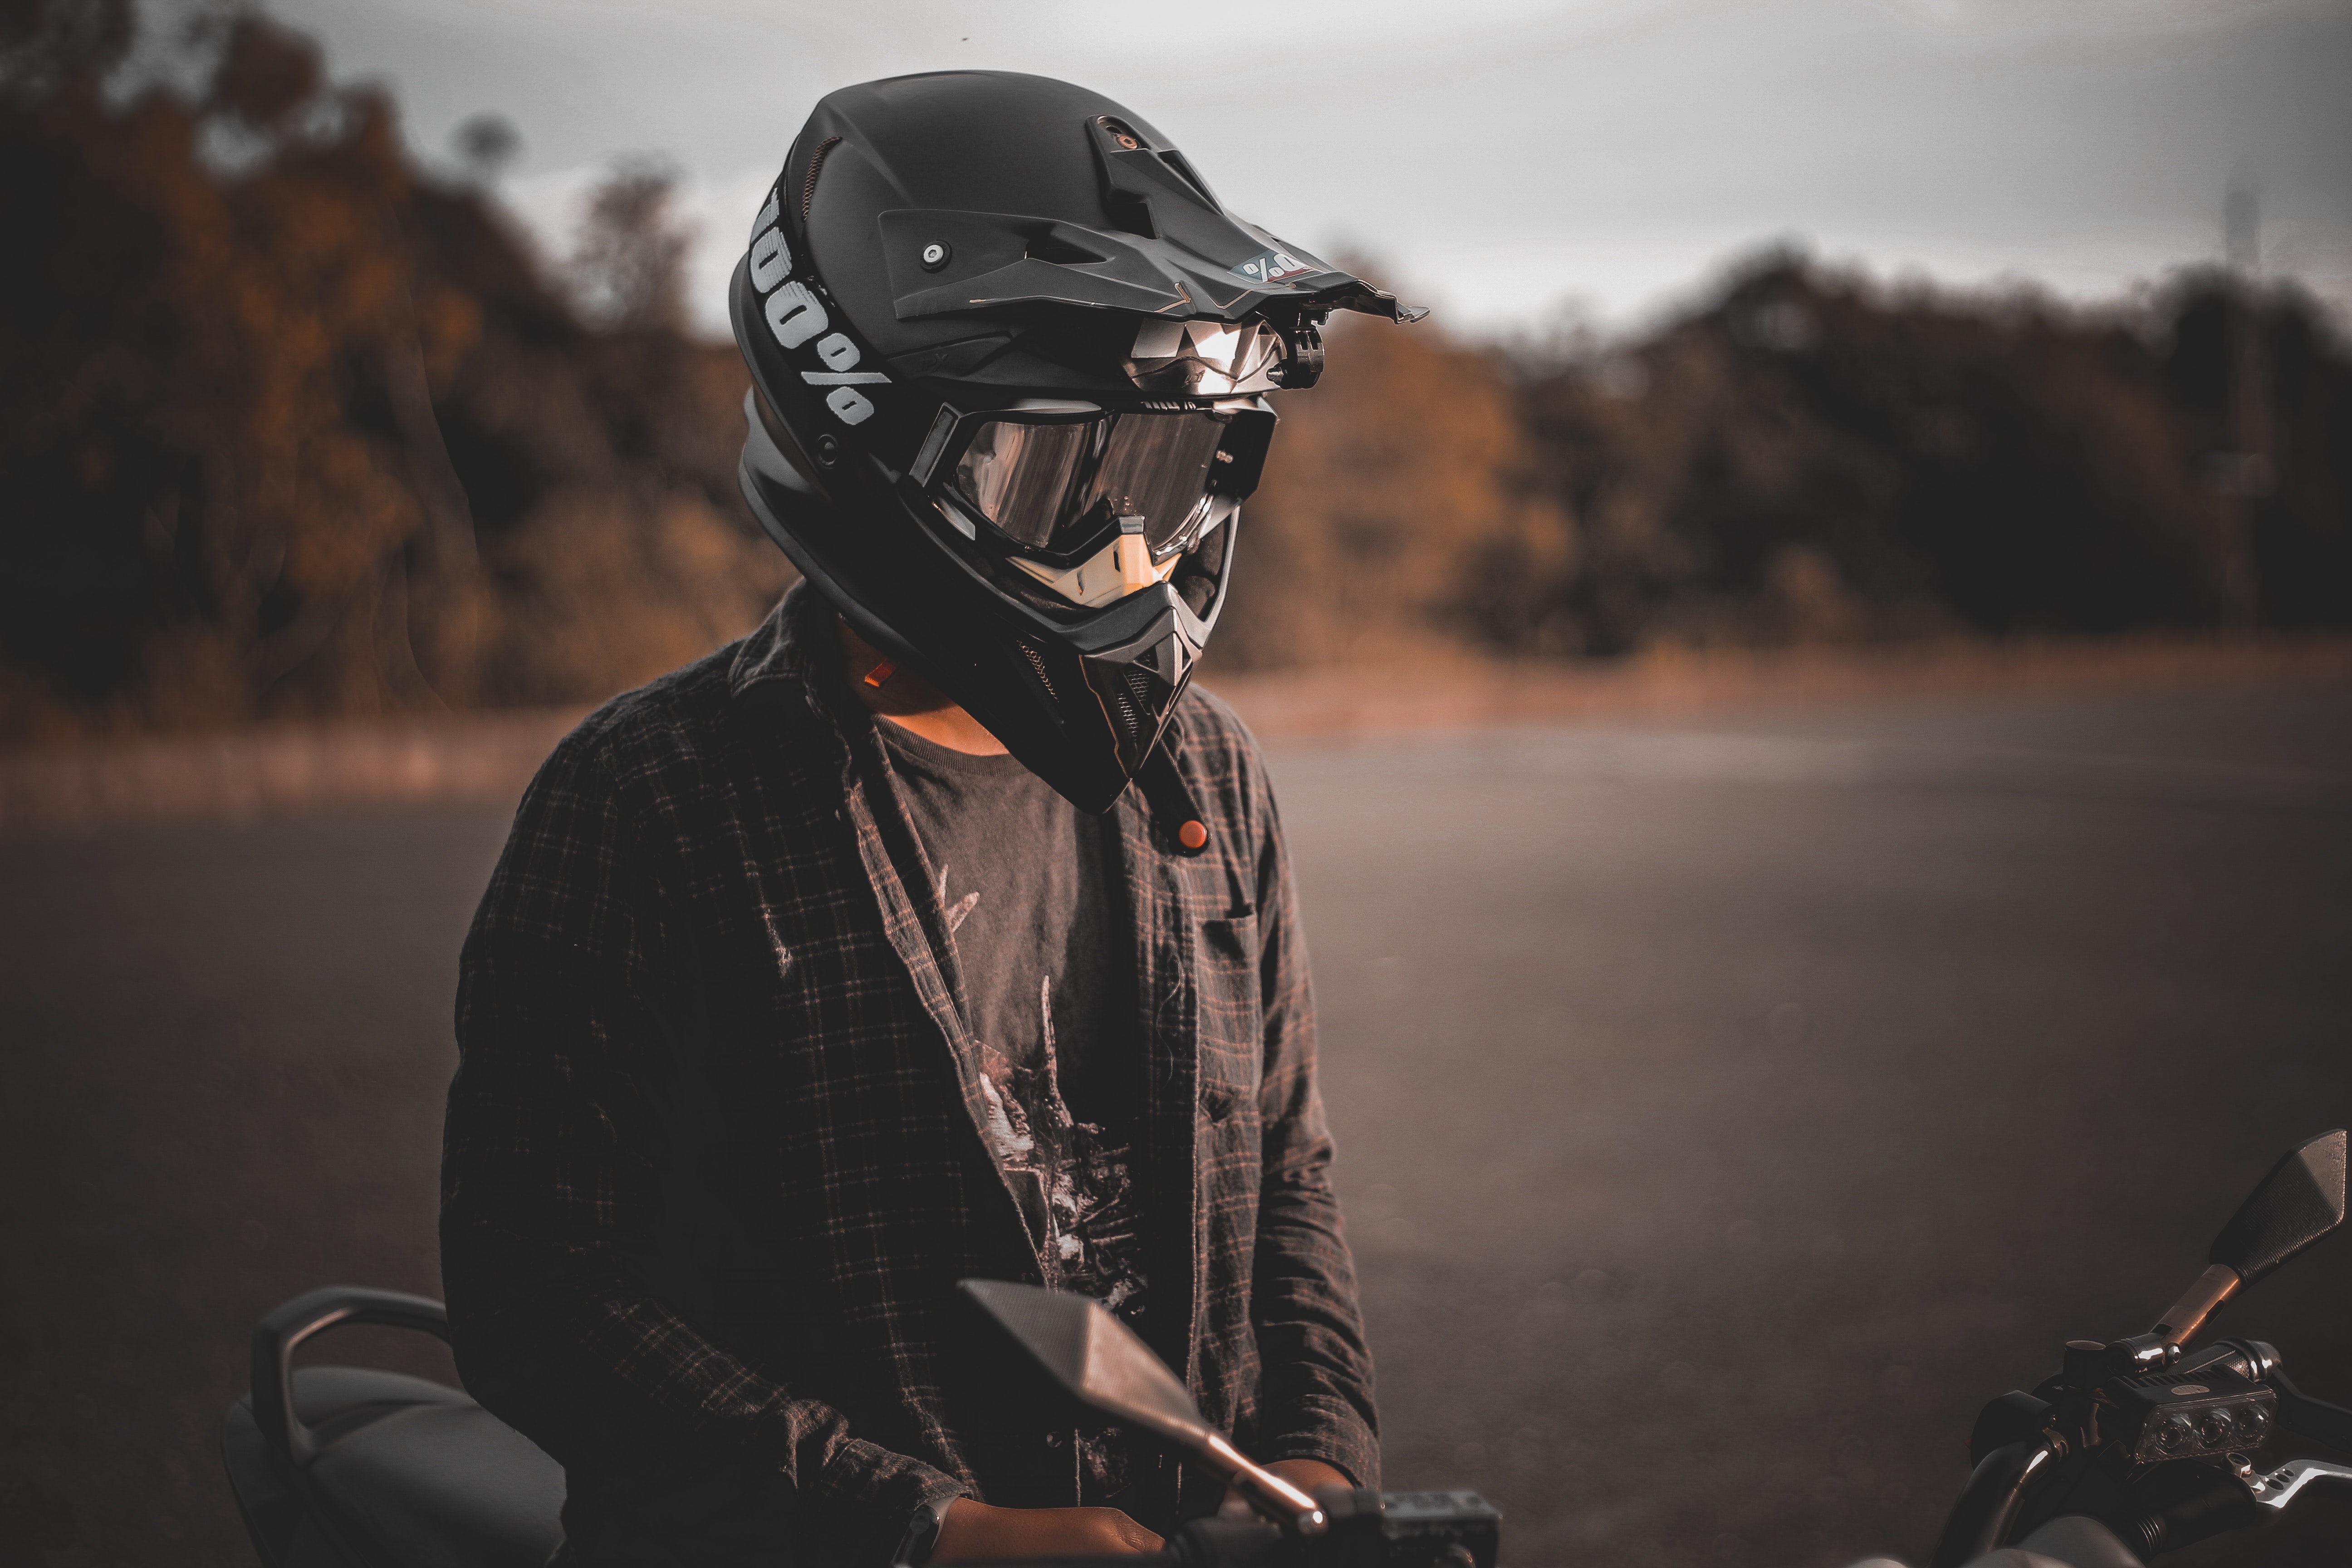 Bicicleta y motos: ¿qué accesorios de seguridad necesitas?